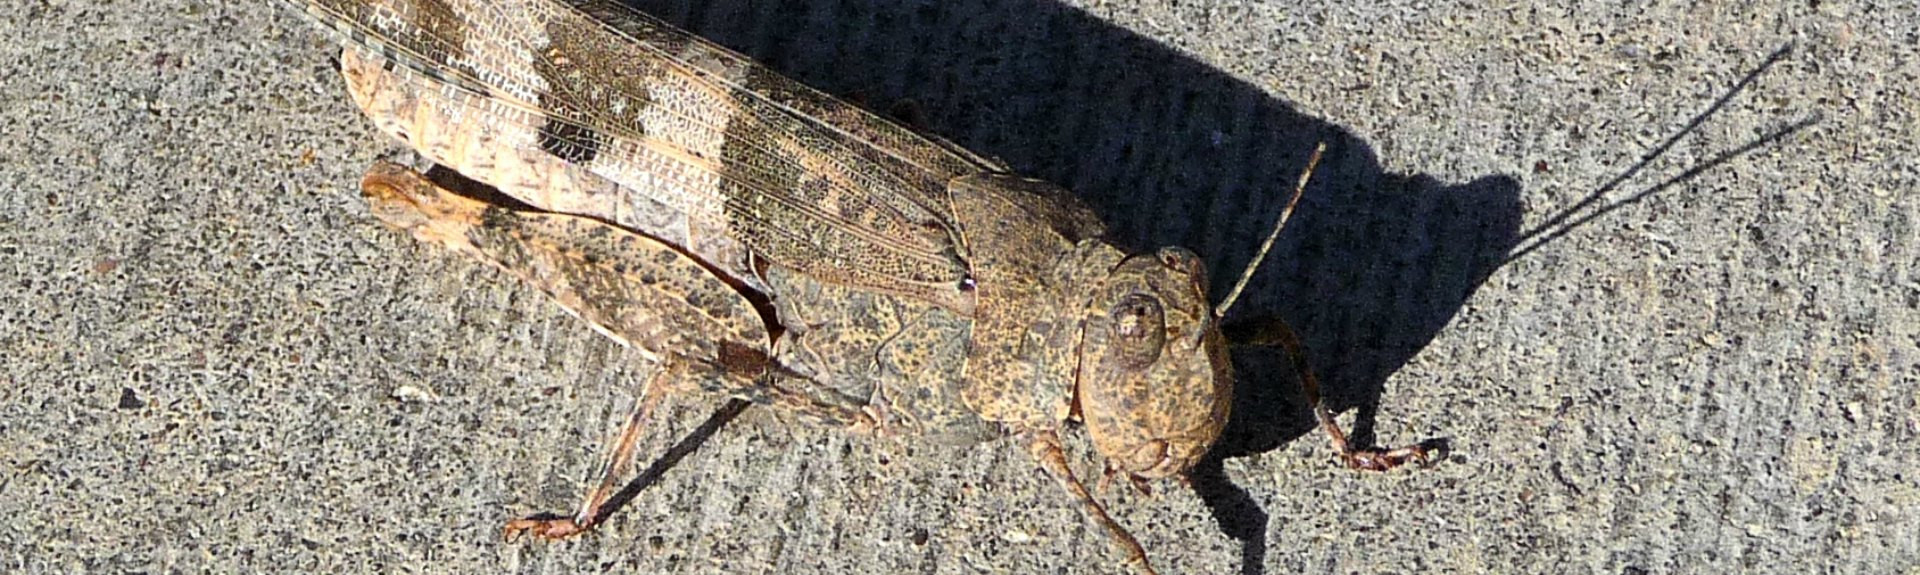 Grasshopper1920